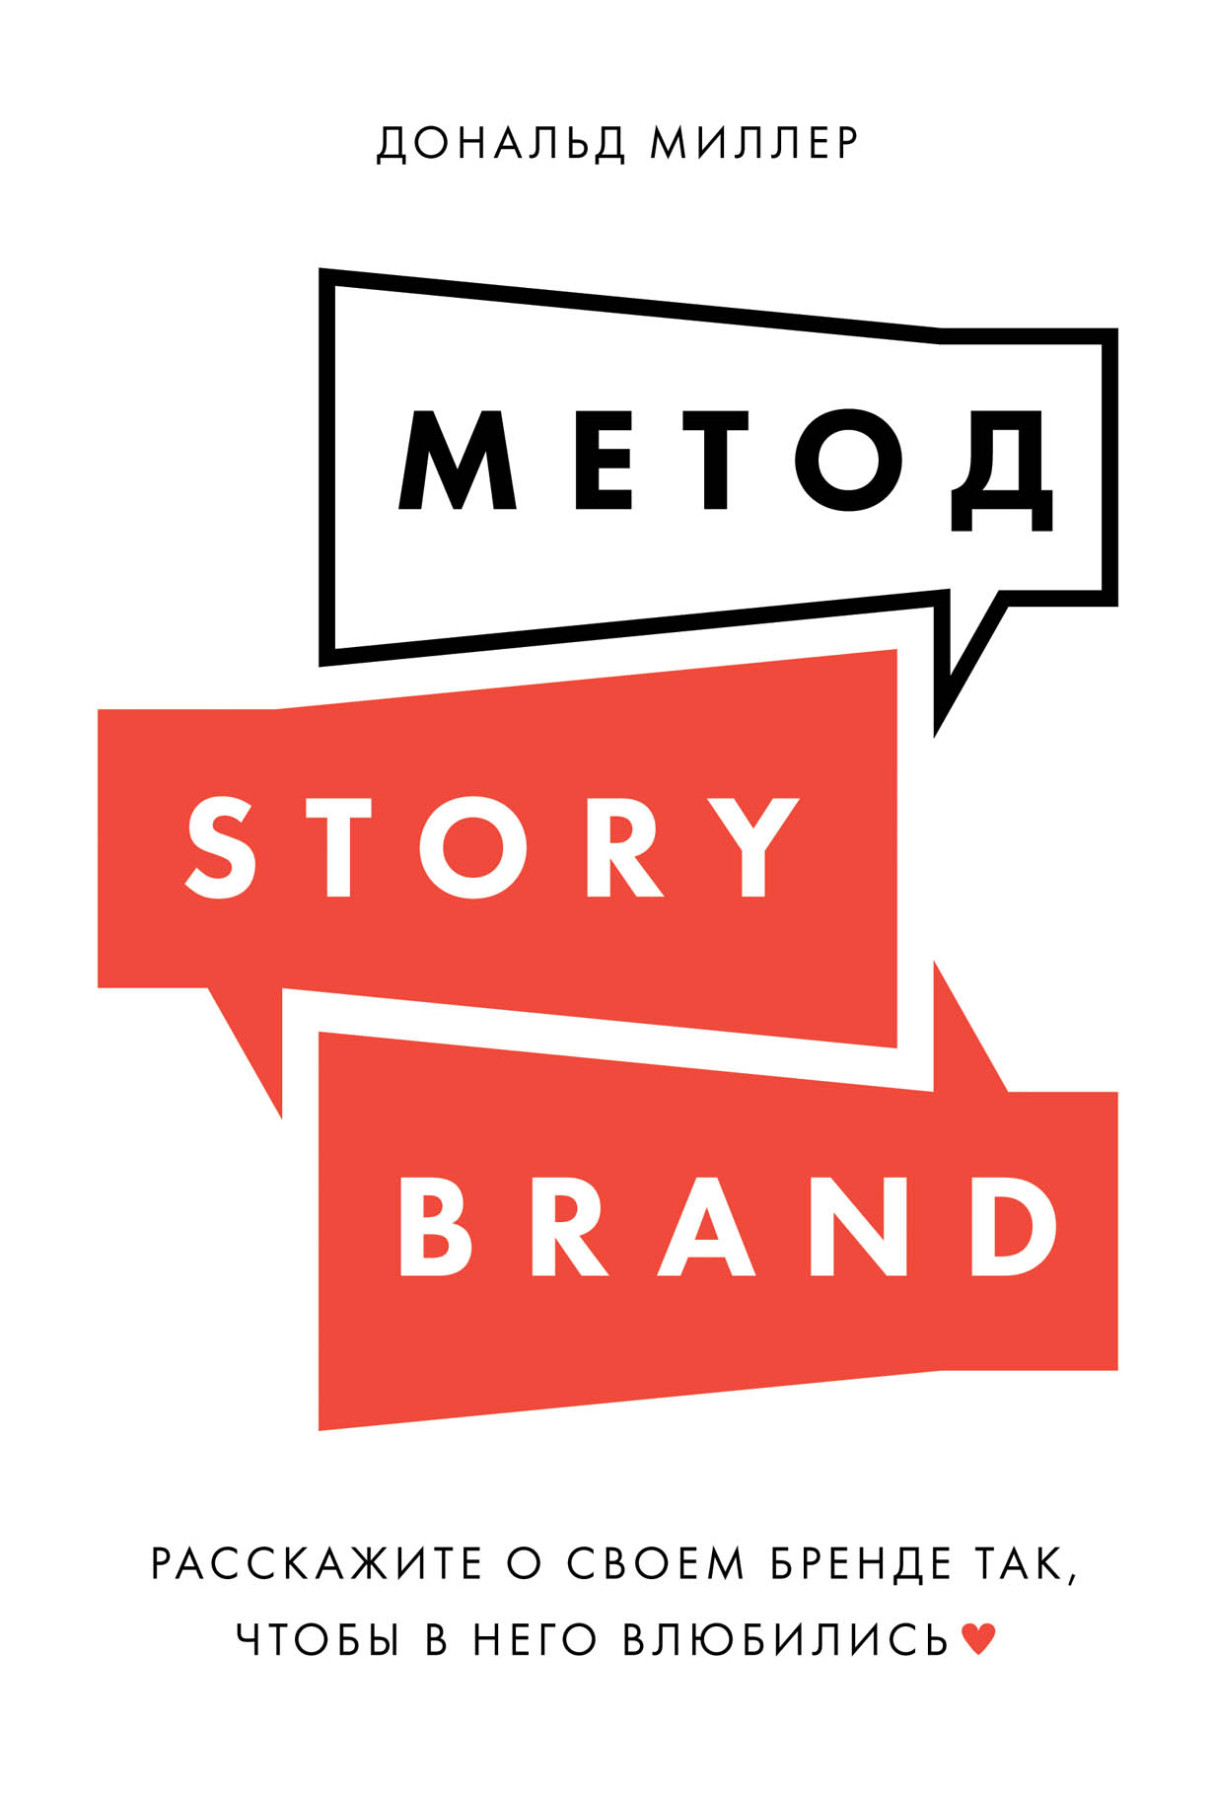 Метод StoryBrand обложка.